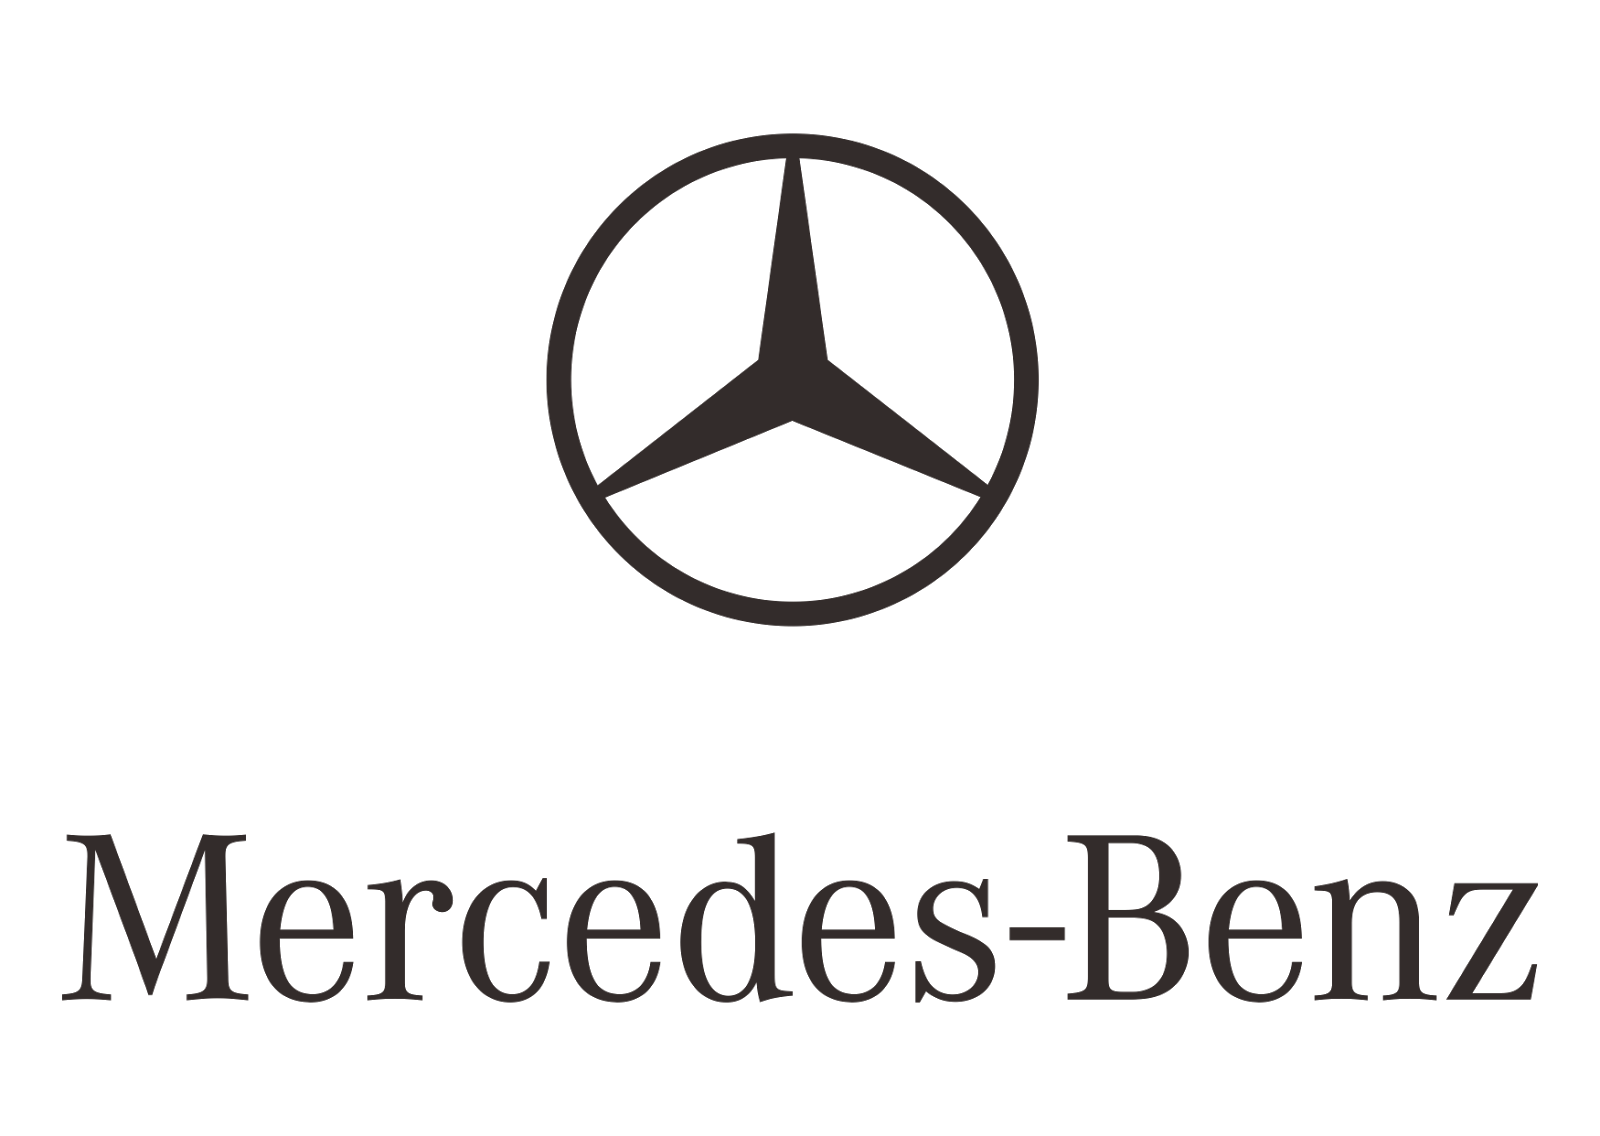 Mercedes-Benz Logo Transparent Image PNG Image